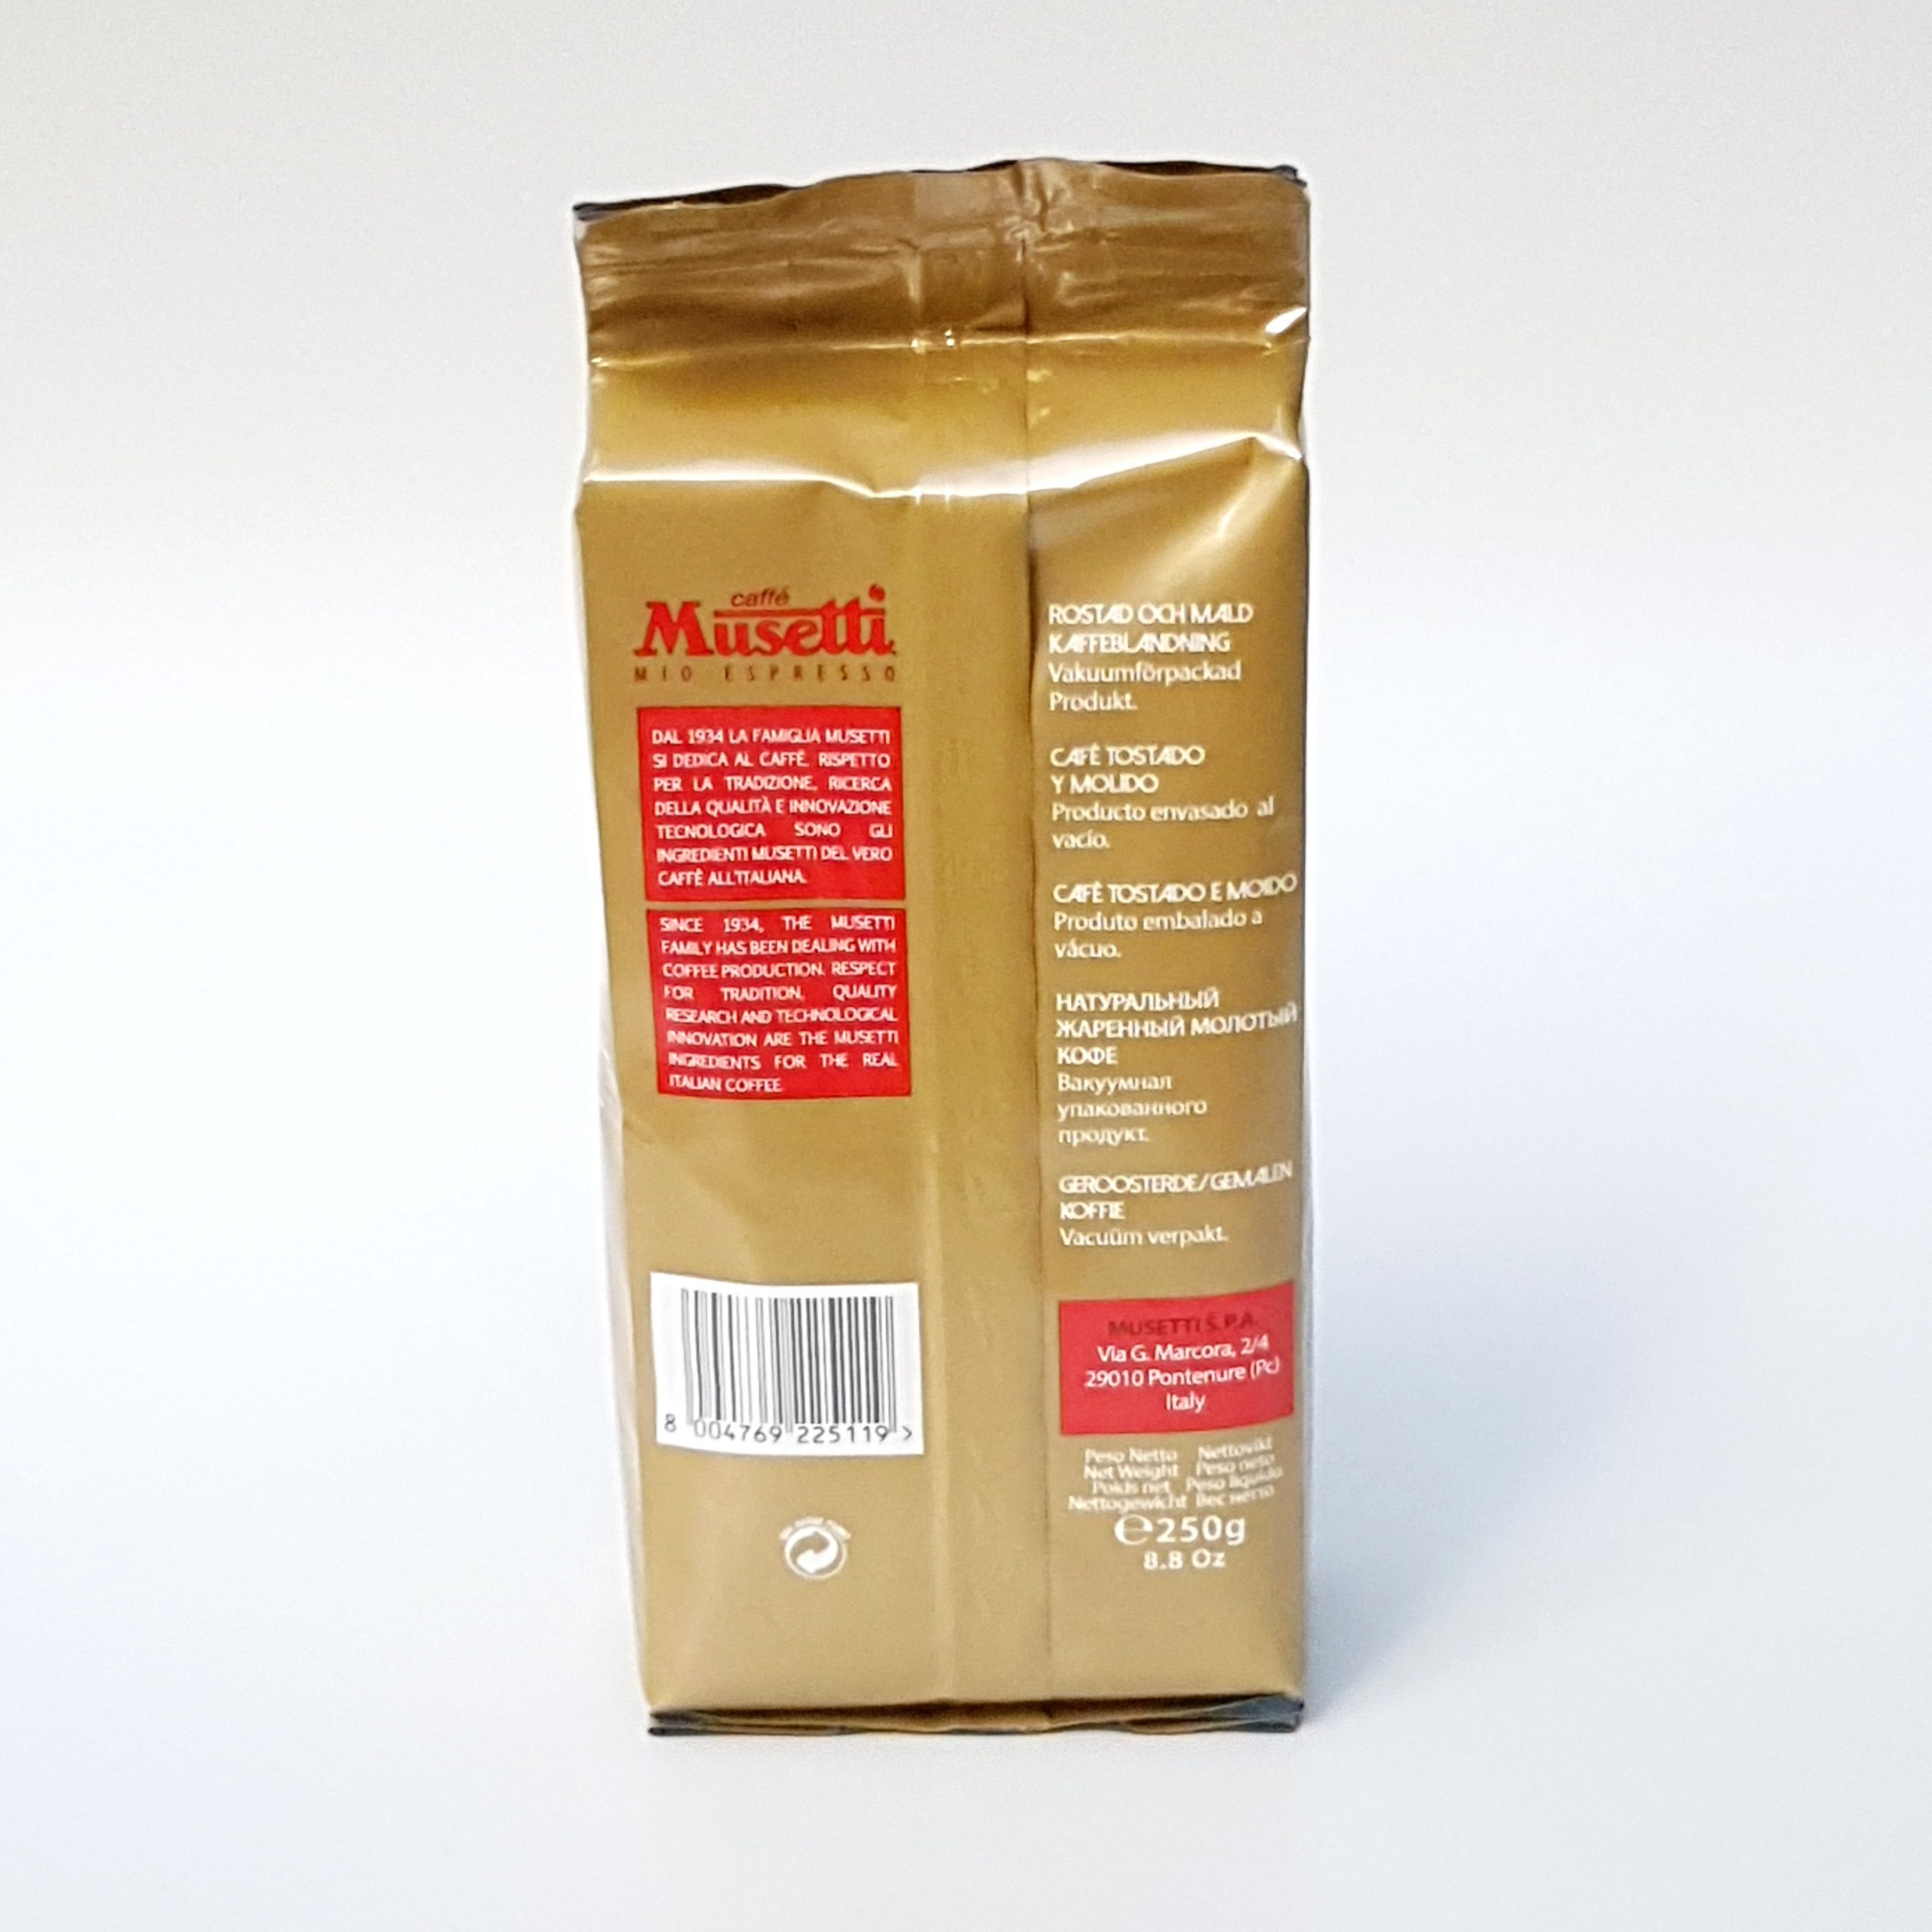 Lavazza Qualita Oro mezcla de café molido, tostado medio, latas de 8.8 onzas